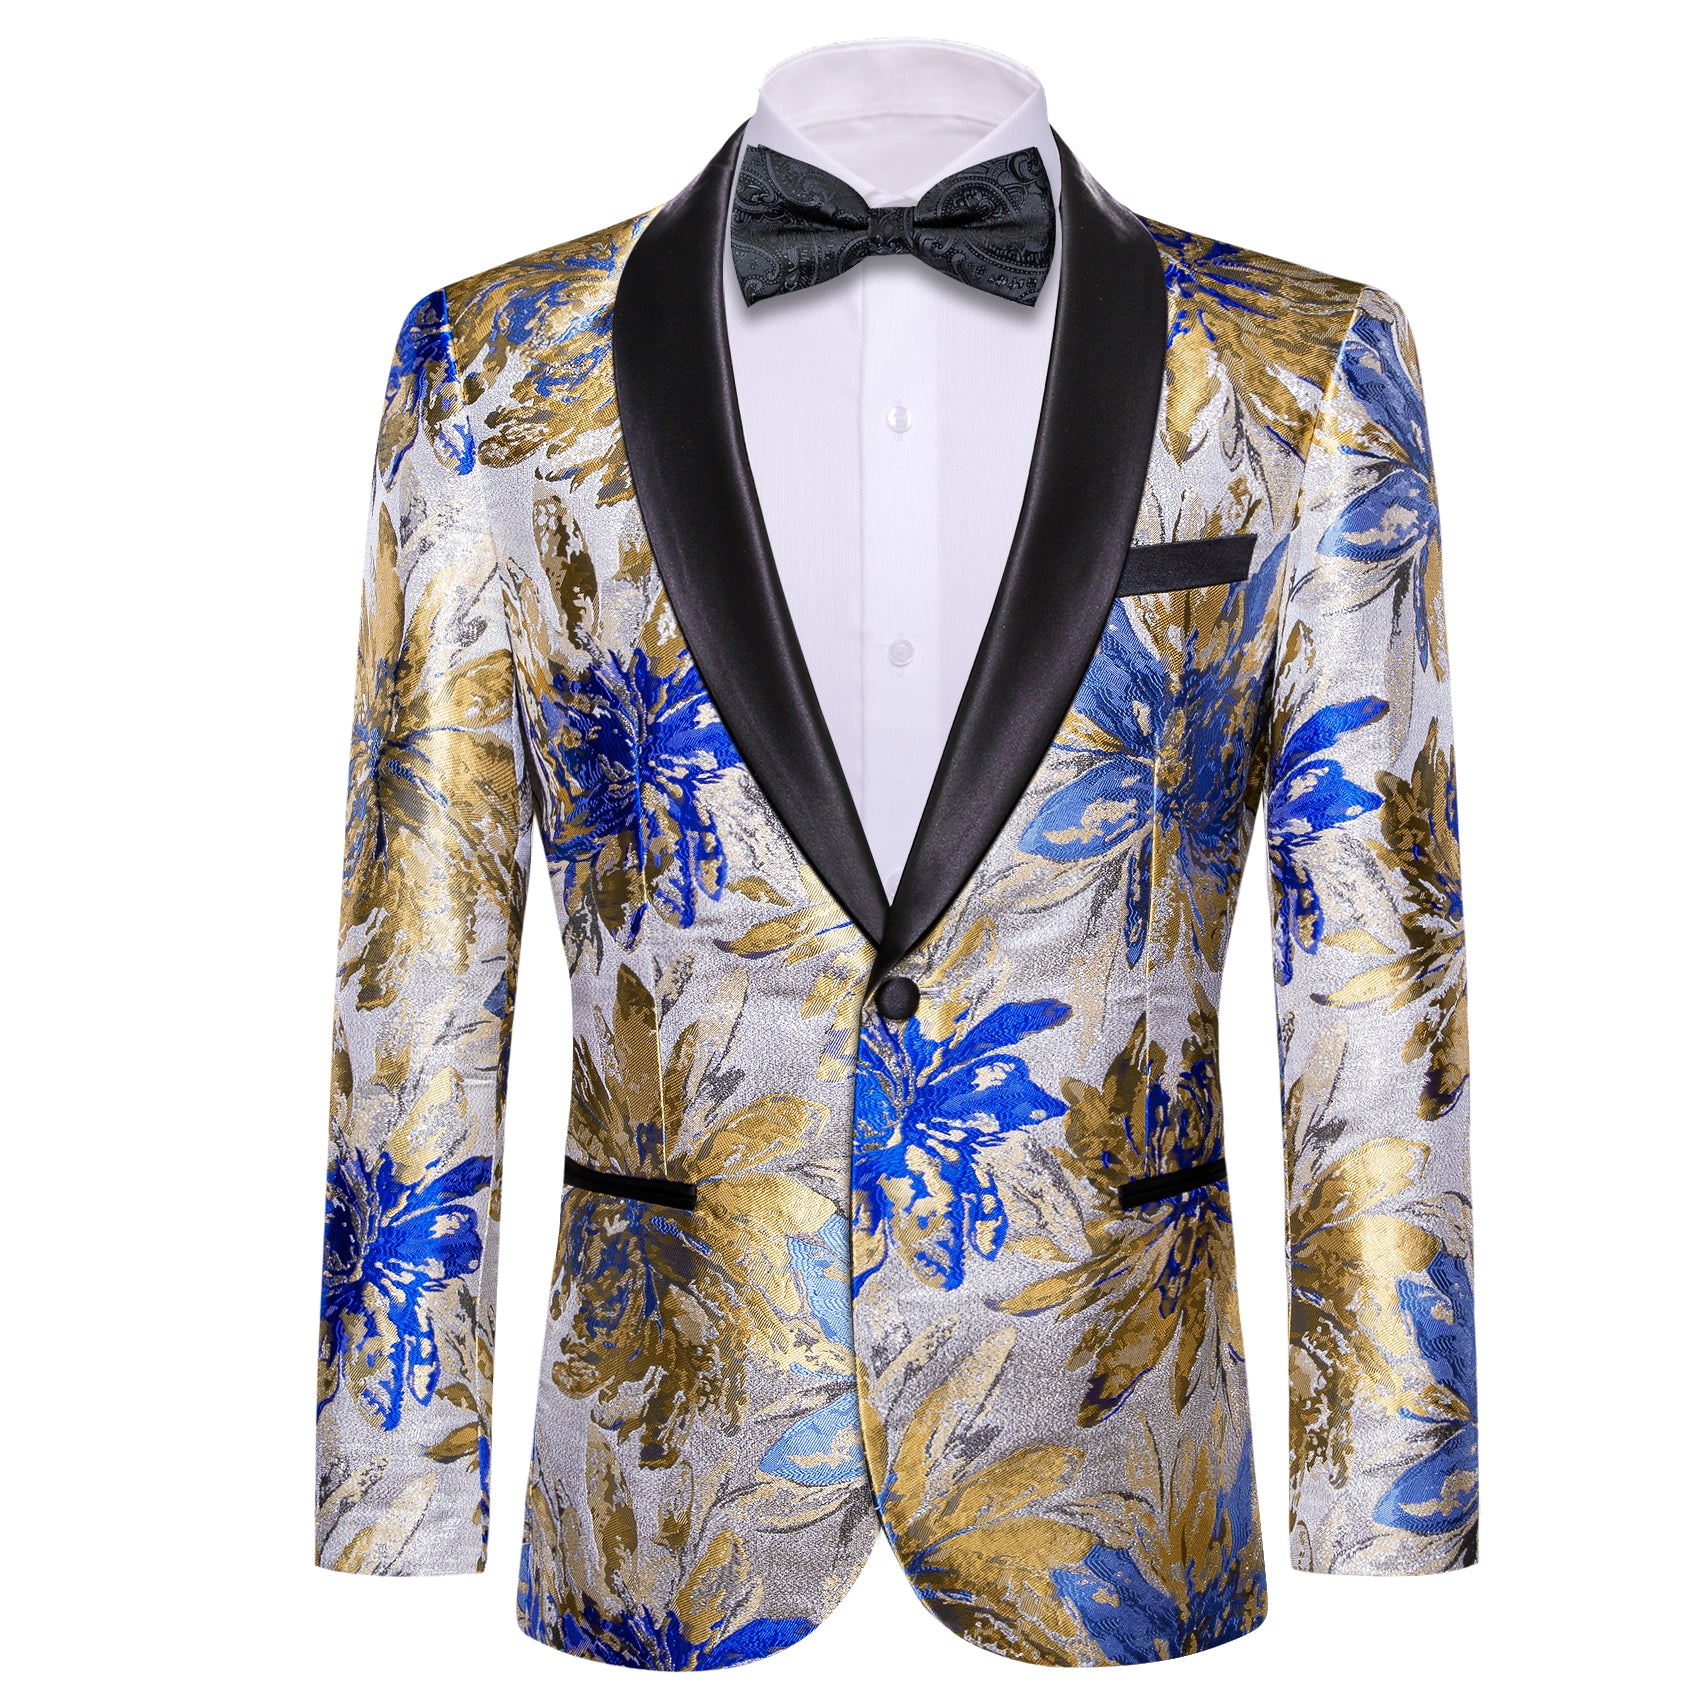 Men's Dress Party Silver Blue Floral Suit Jacket Slim One Button Stylish Blazer